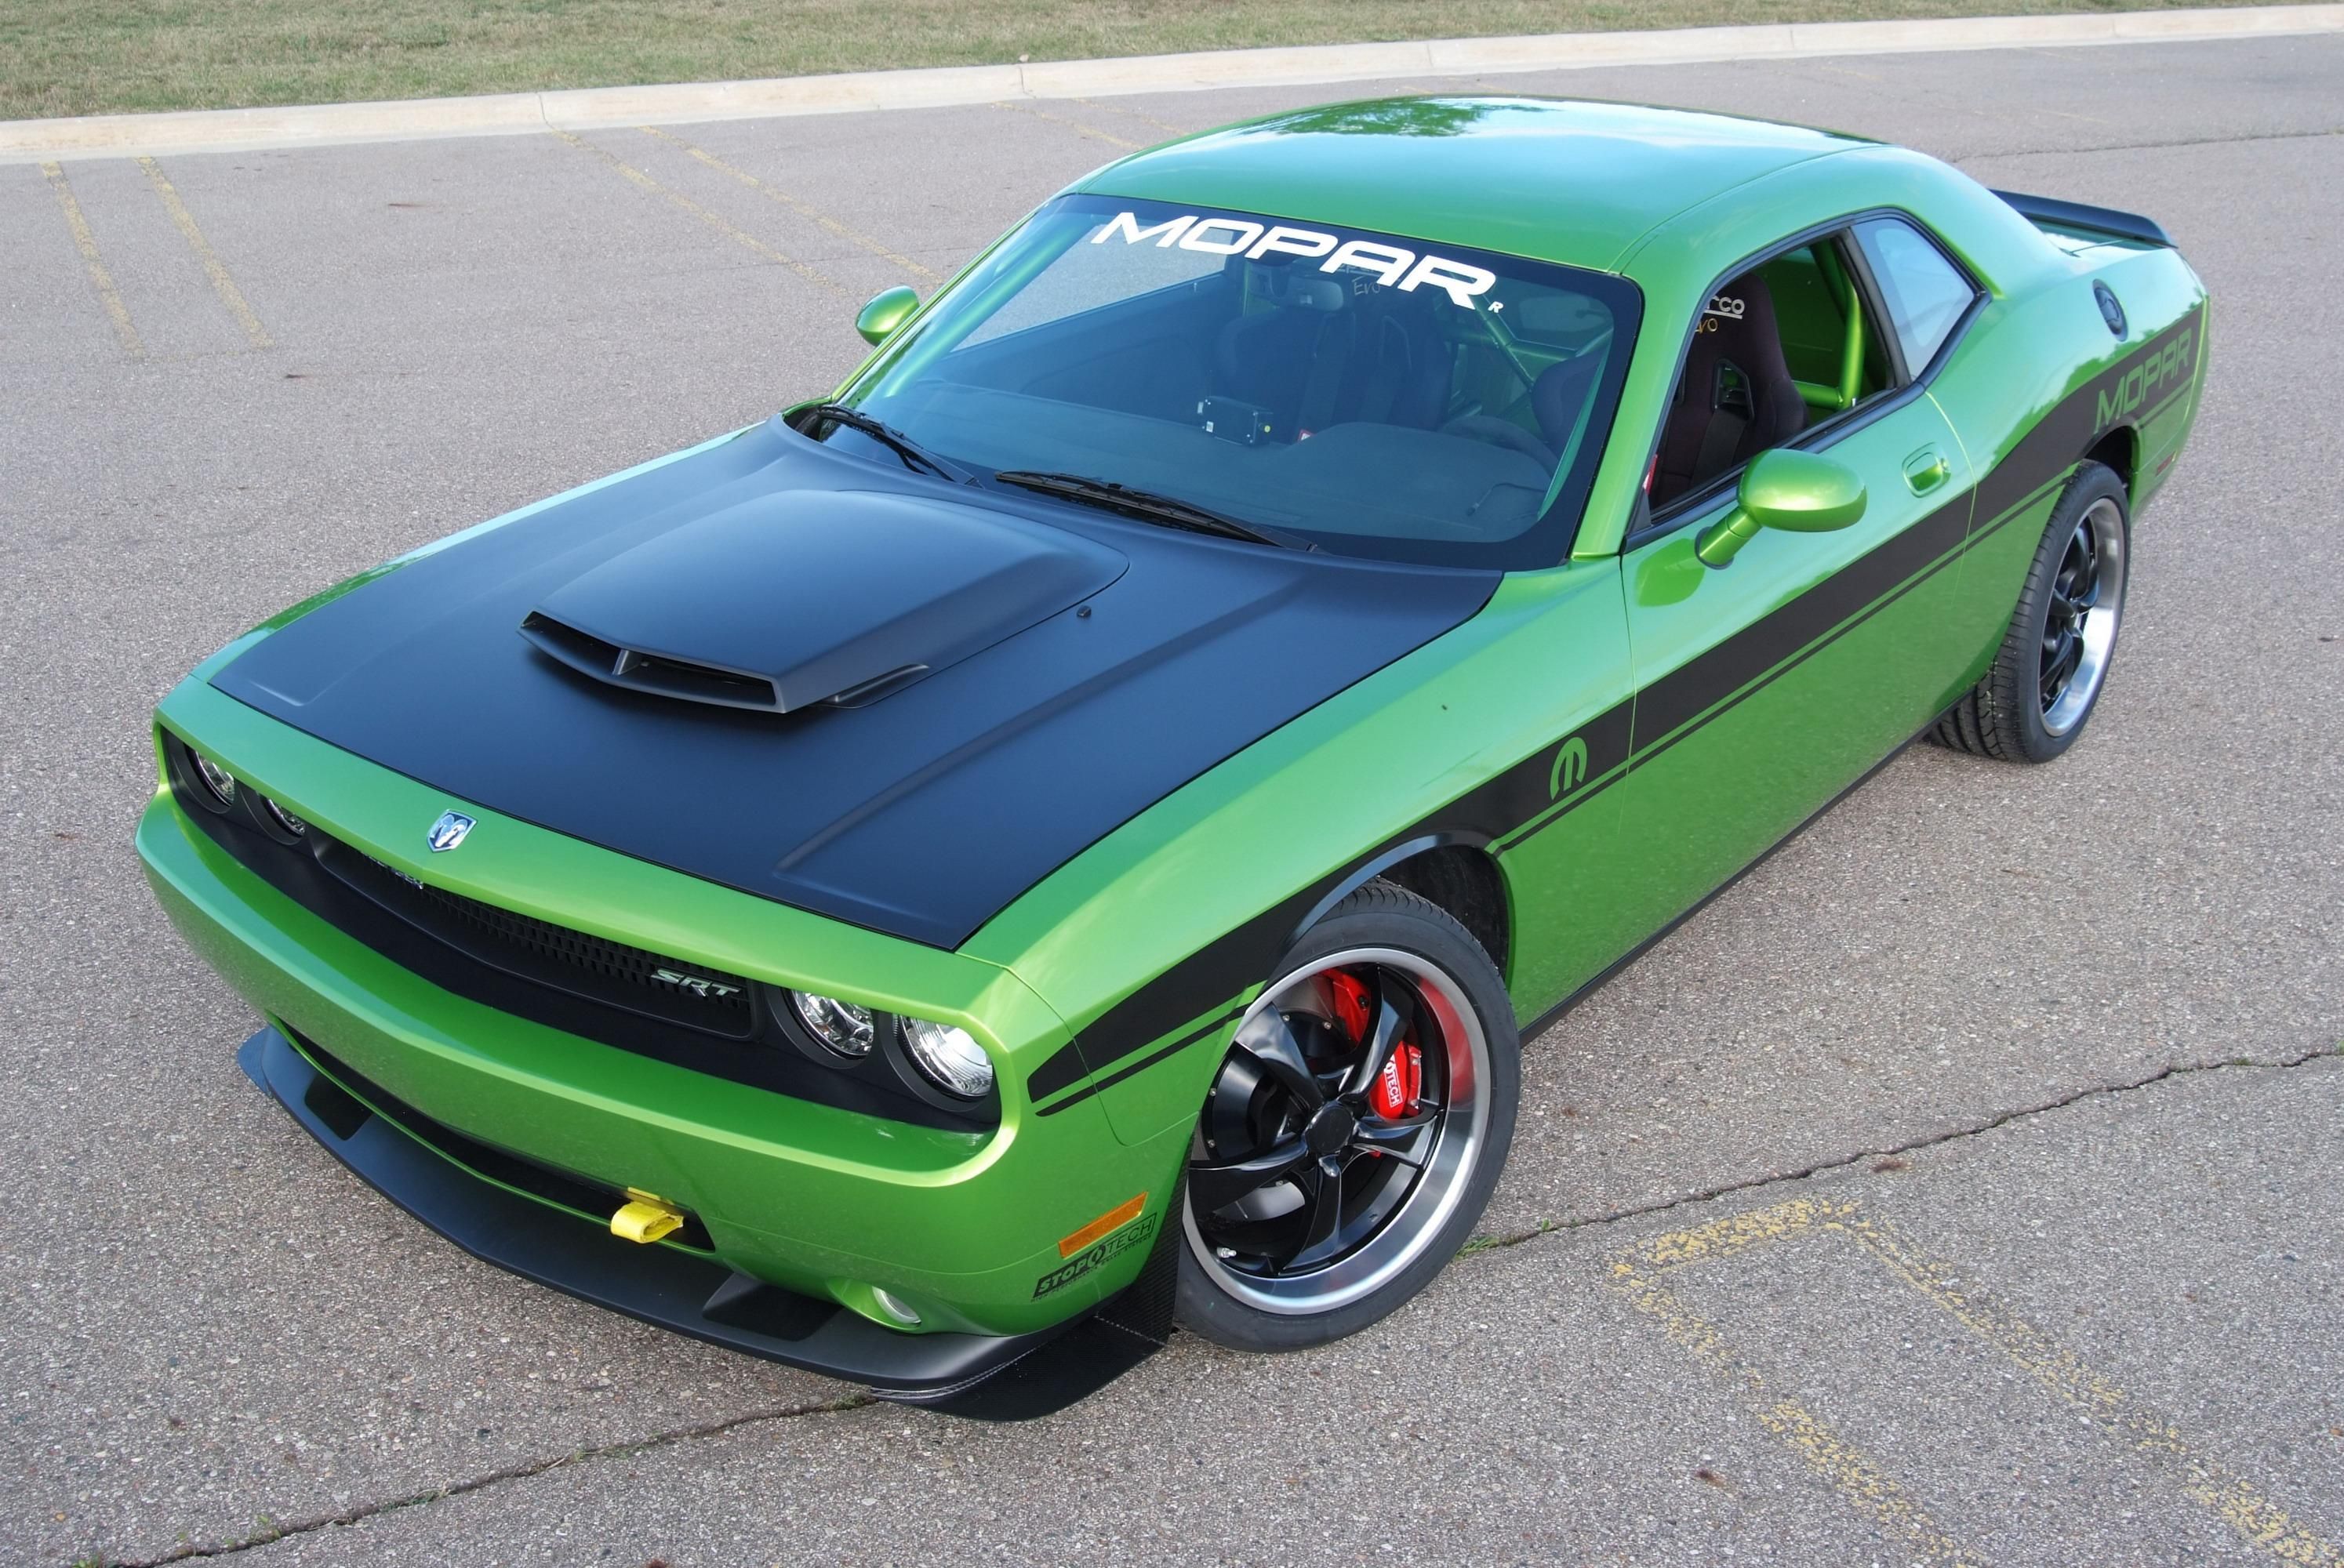 A green Dodge Challenger